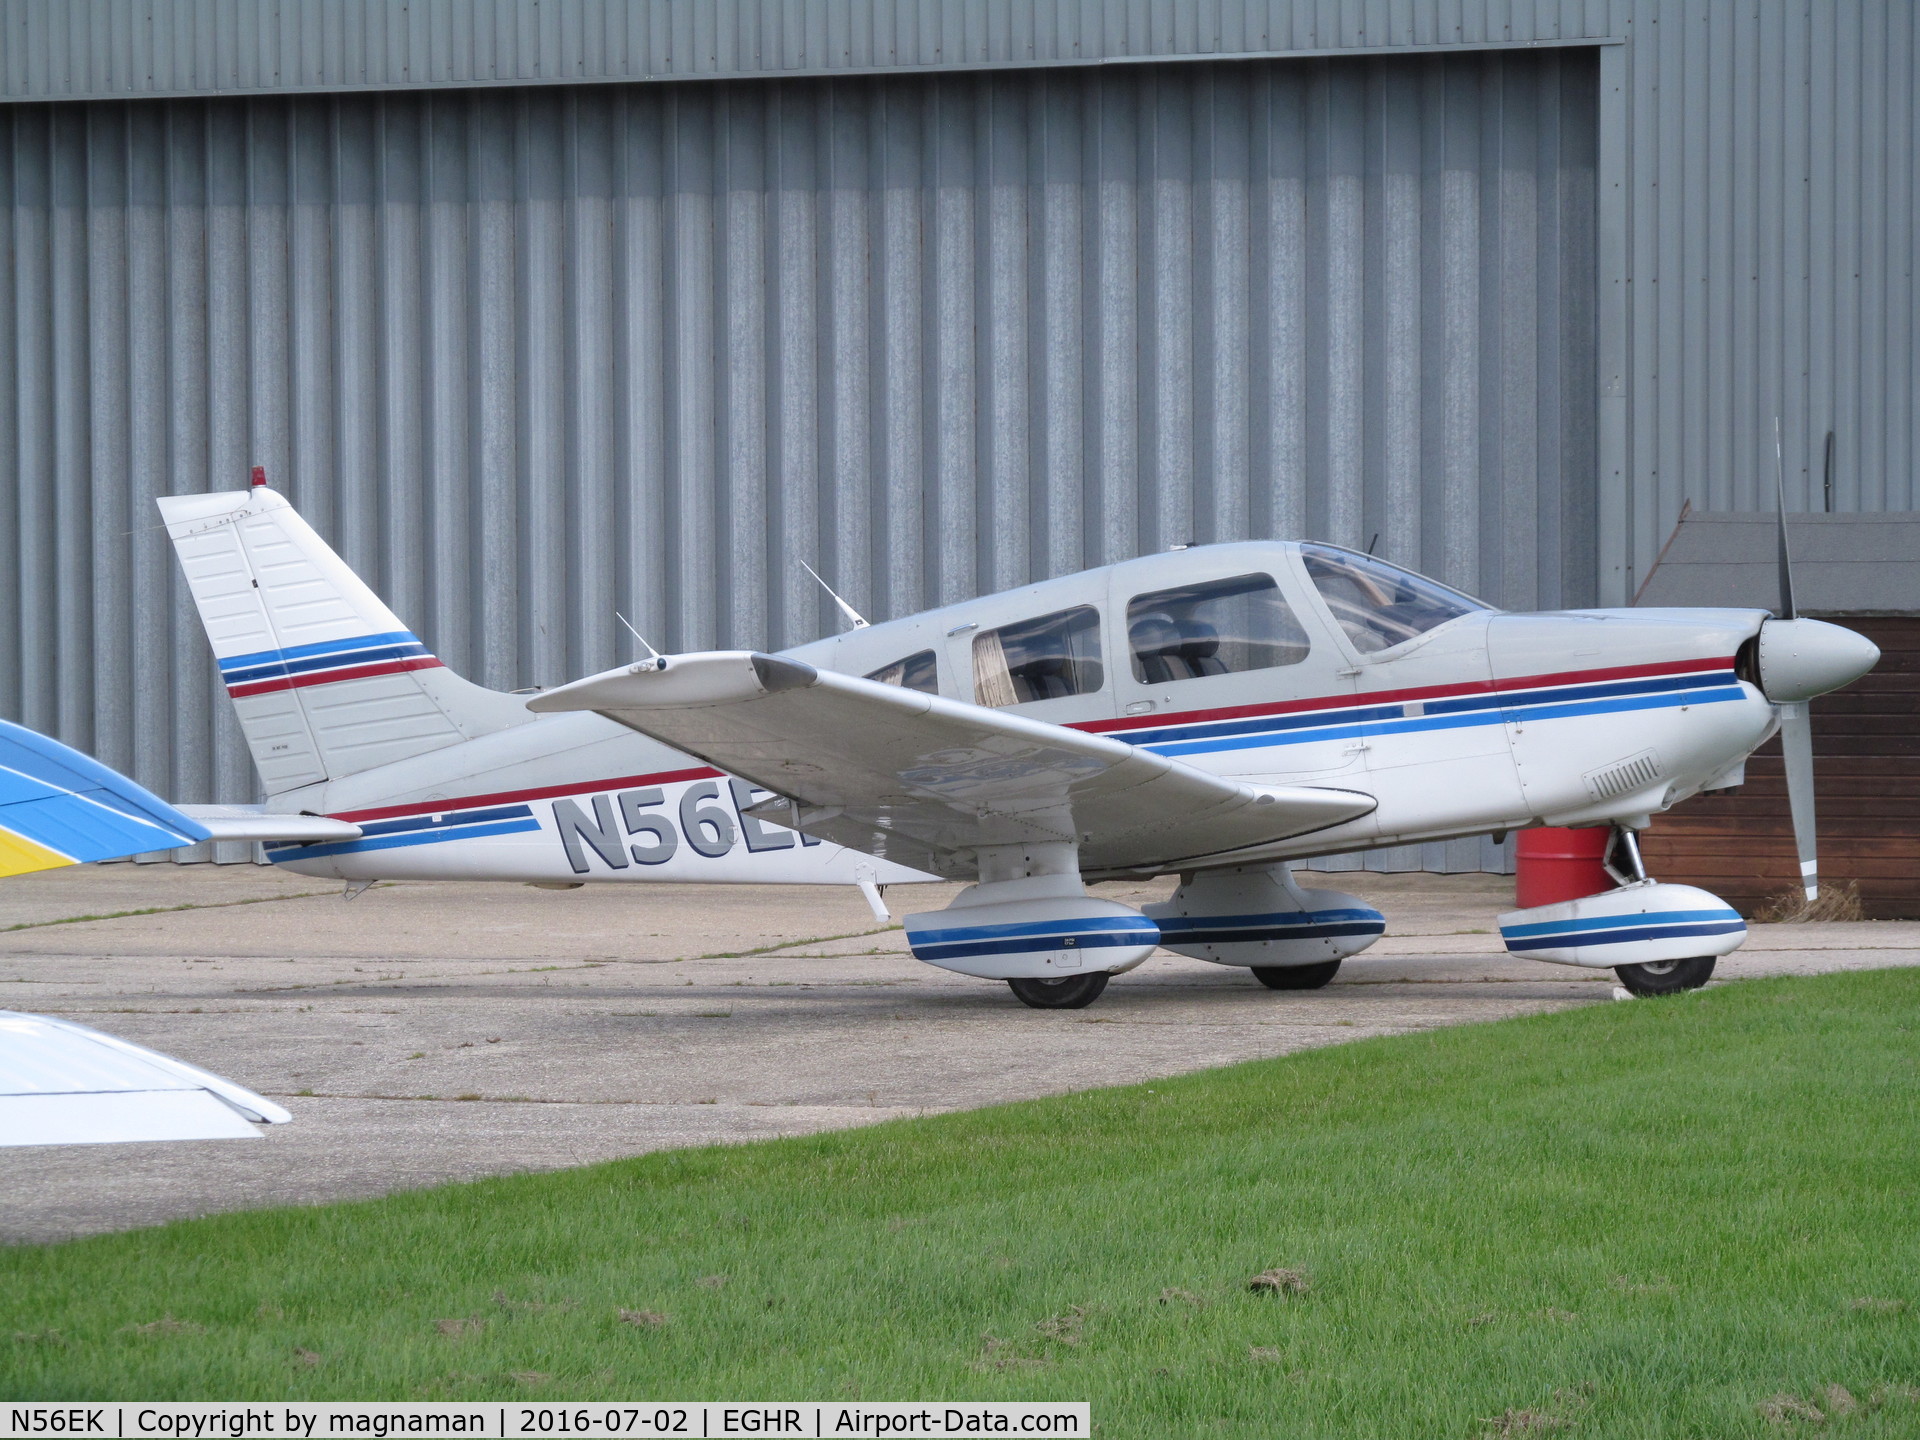 N56EK, Piper PA-28-181 C/N 2890145, last seen at fairoaks